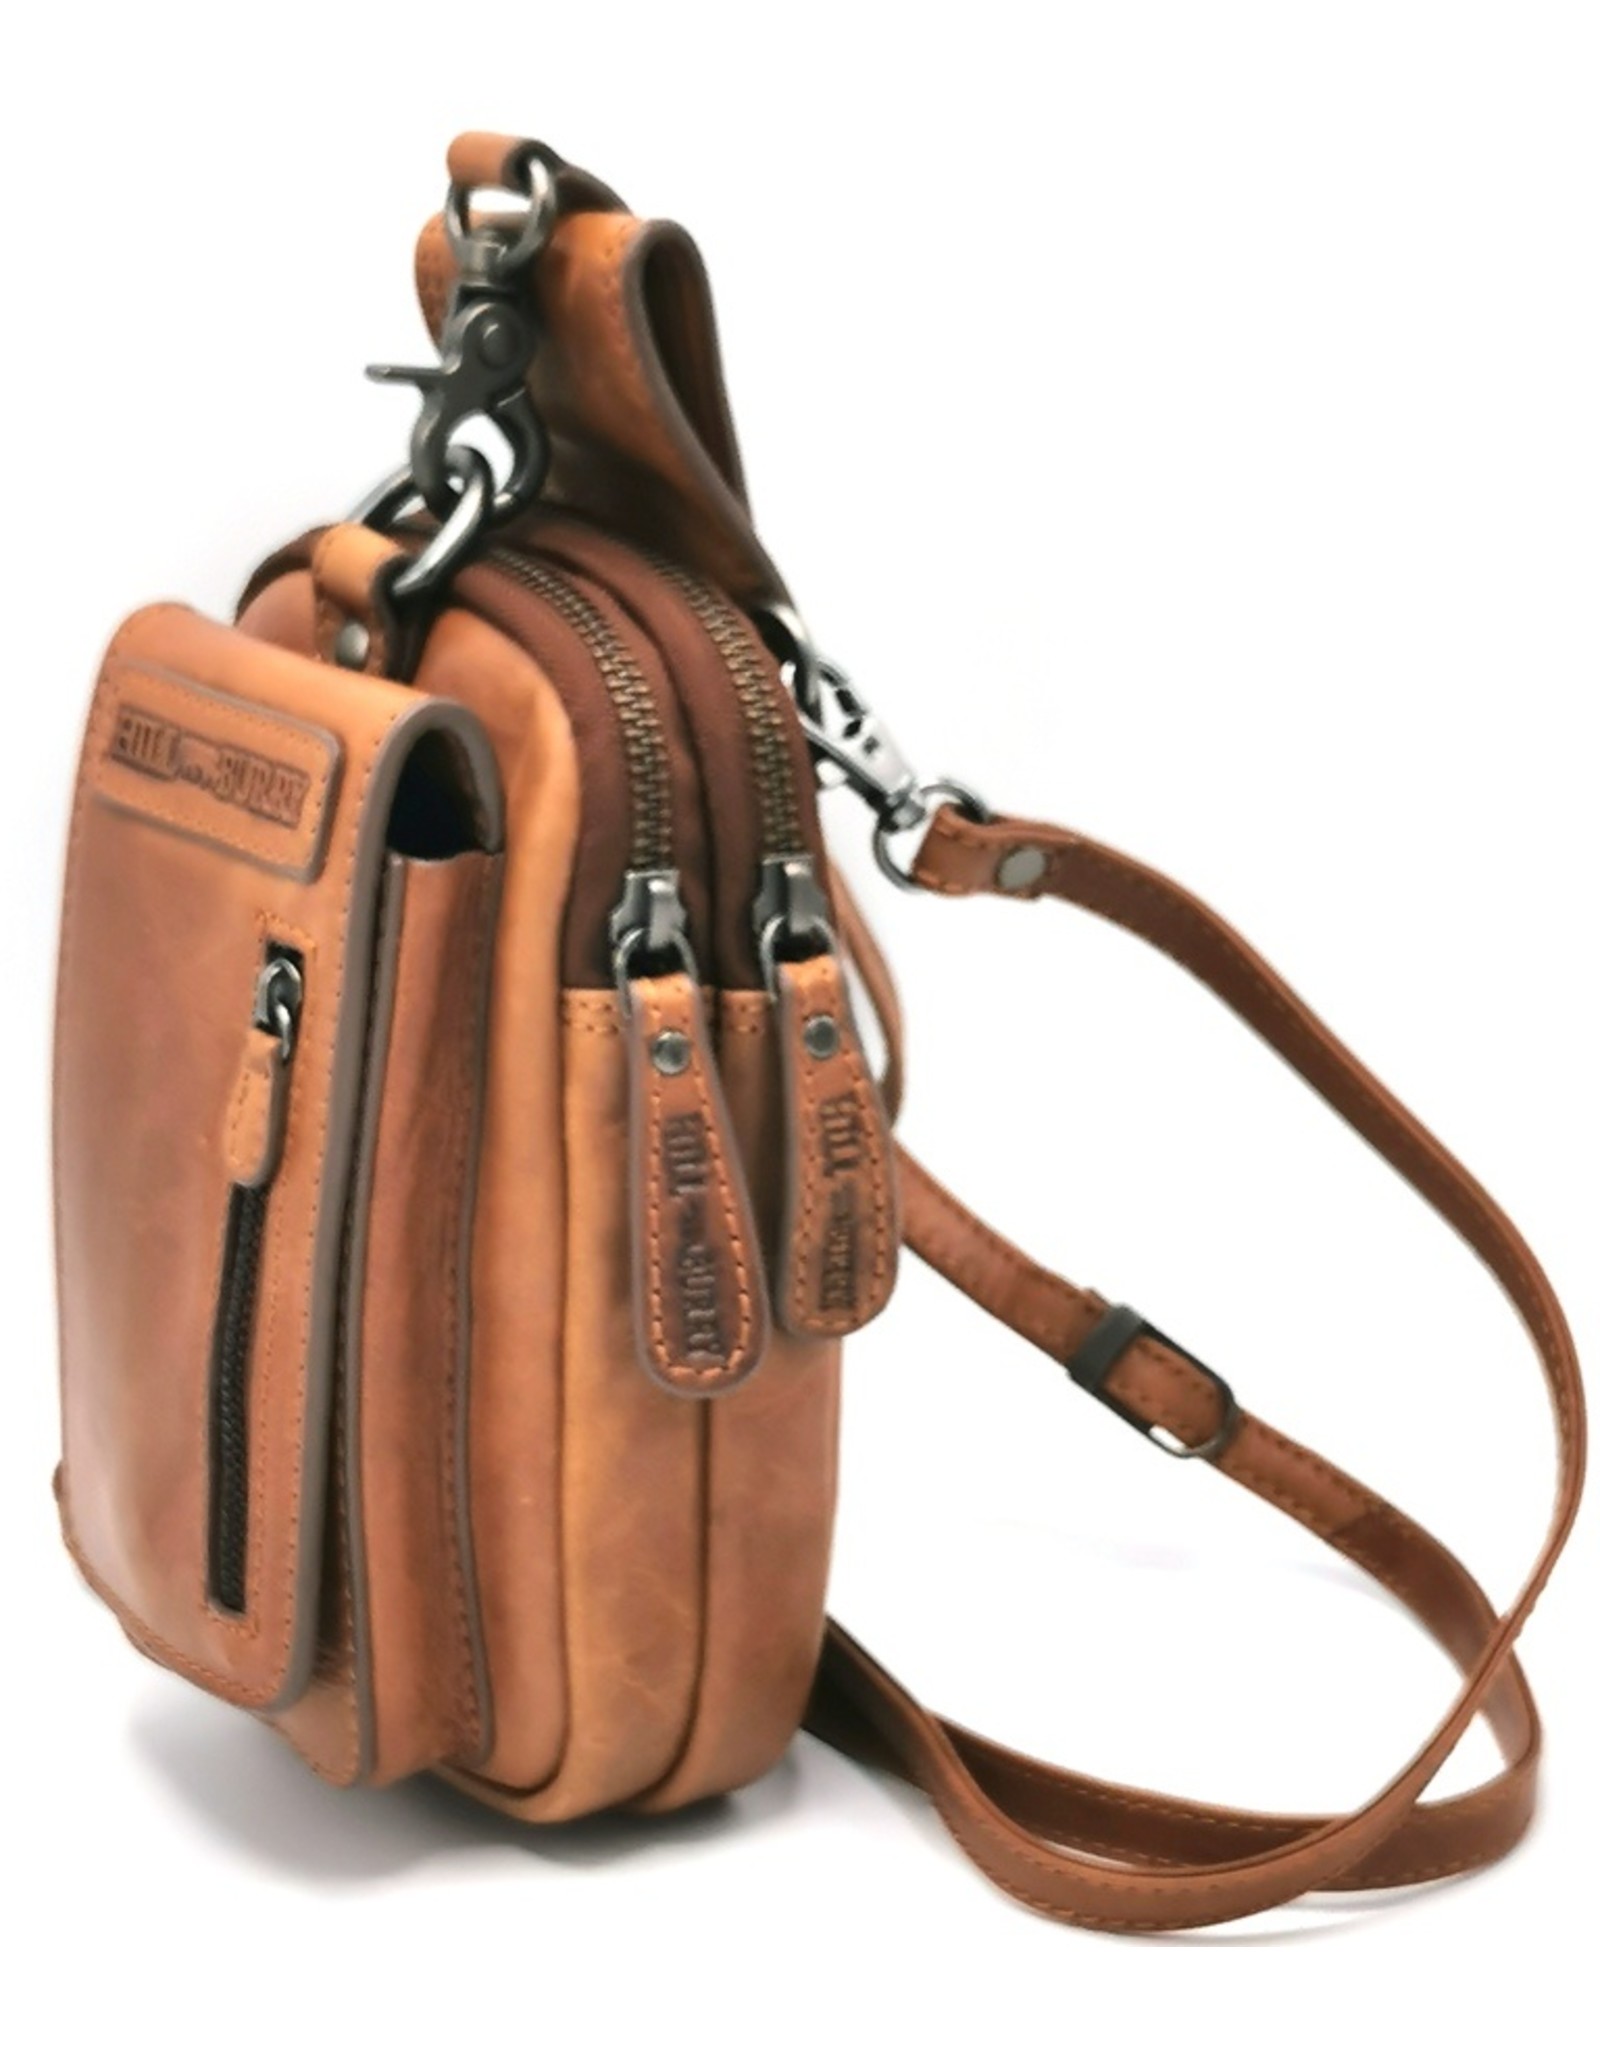 HillBurry Leather bags - HillBurry  Leather Shoulder bag-belt bag  cognac